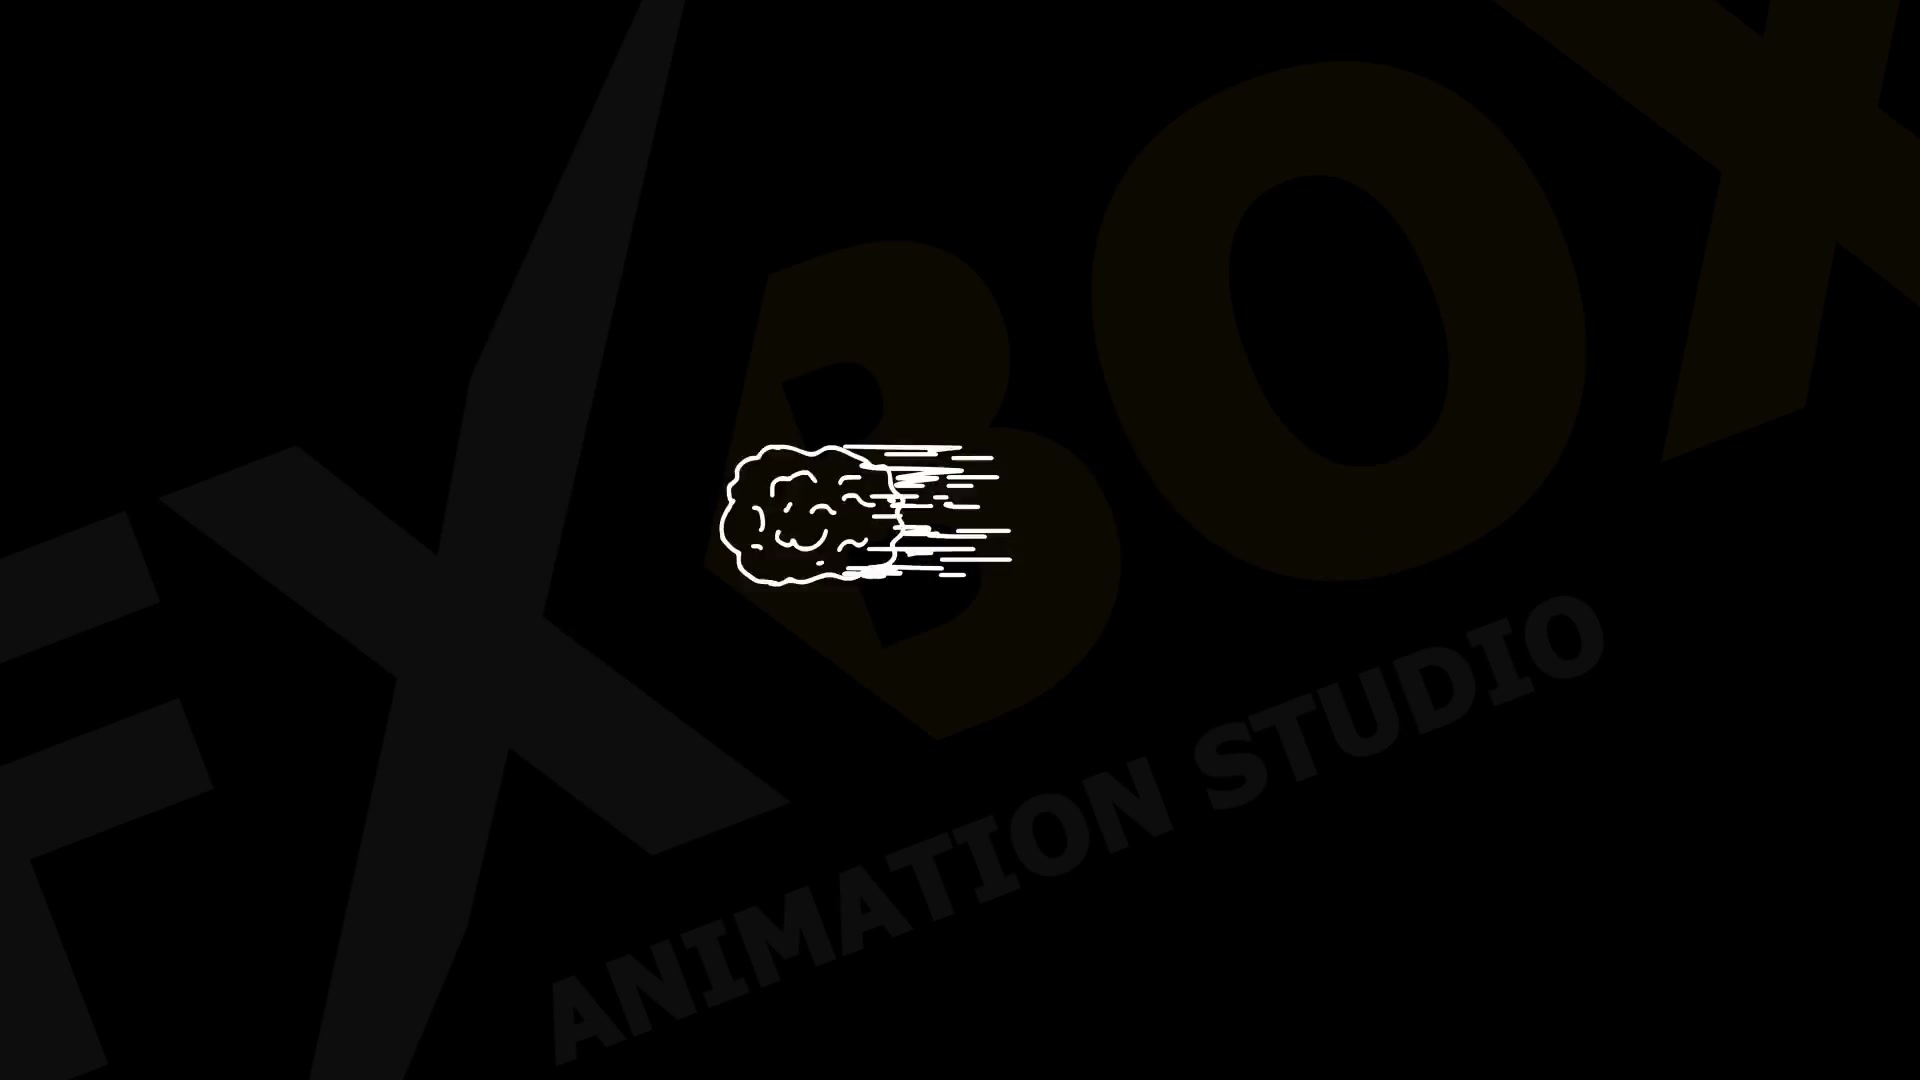 2D Cartoon Snow | Premiere Pro MOGRT Videohive 25347015 Premiere Pro Image 9